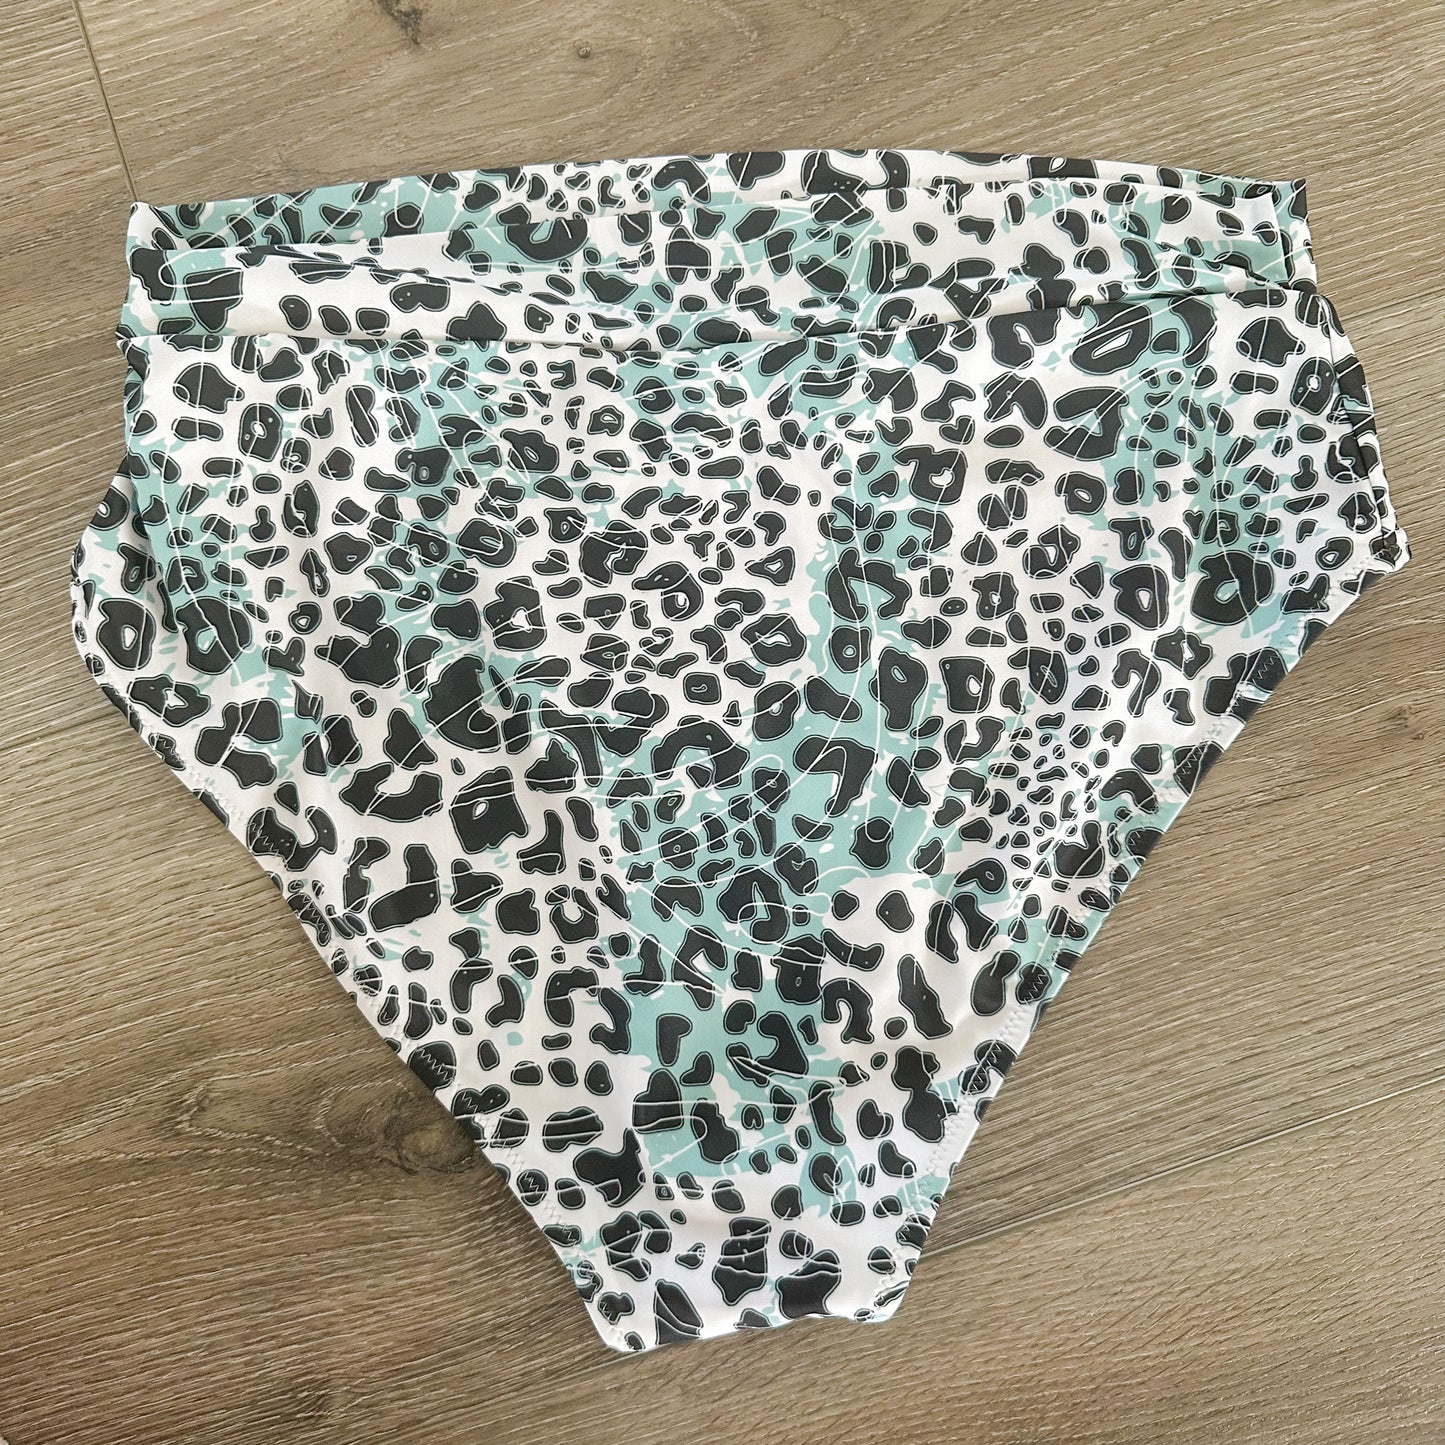 Avanova Halter Leopard High Waist Bikini Size Large